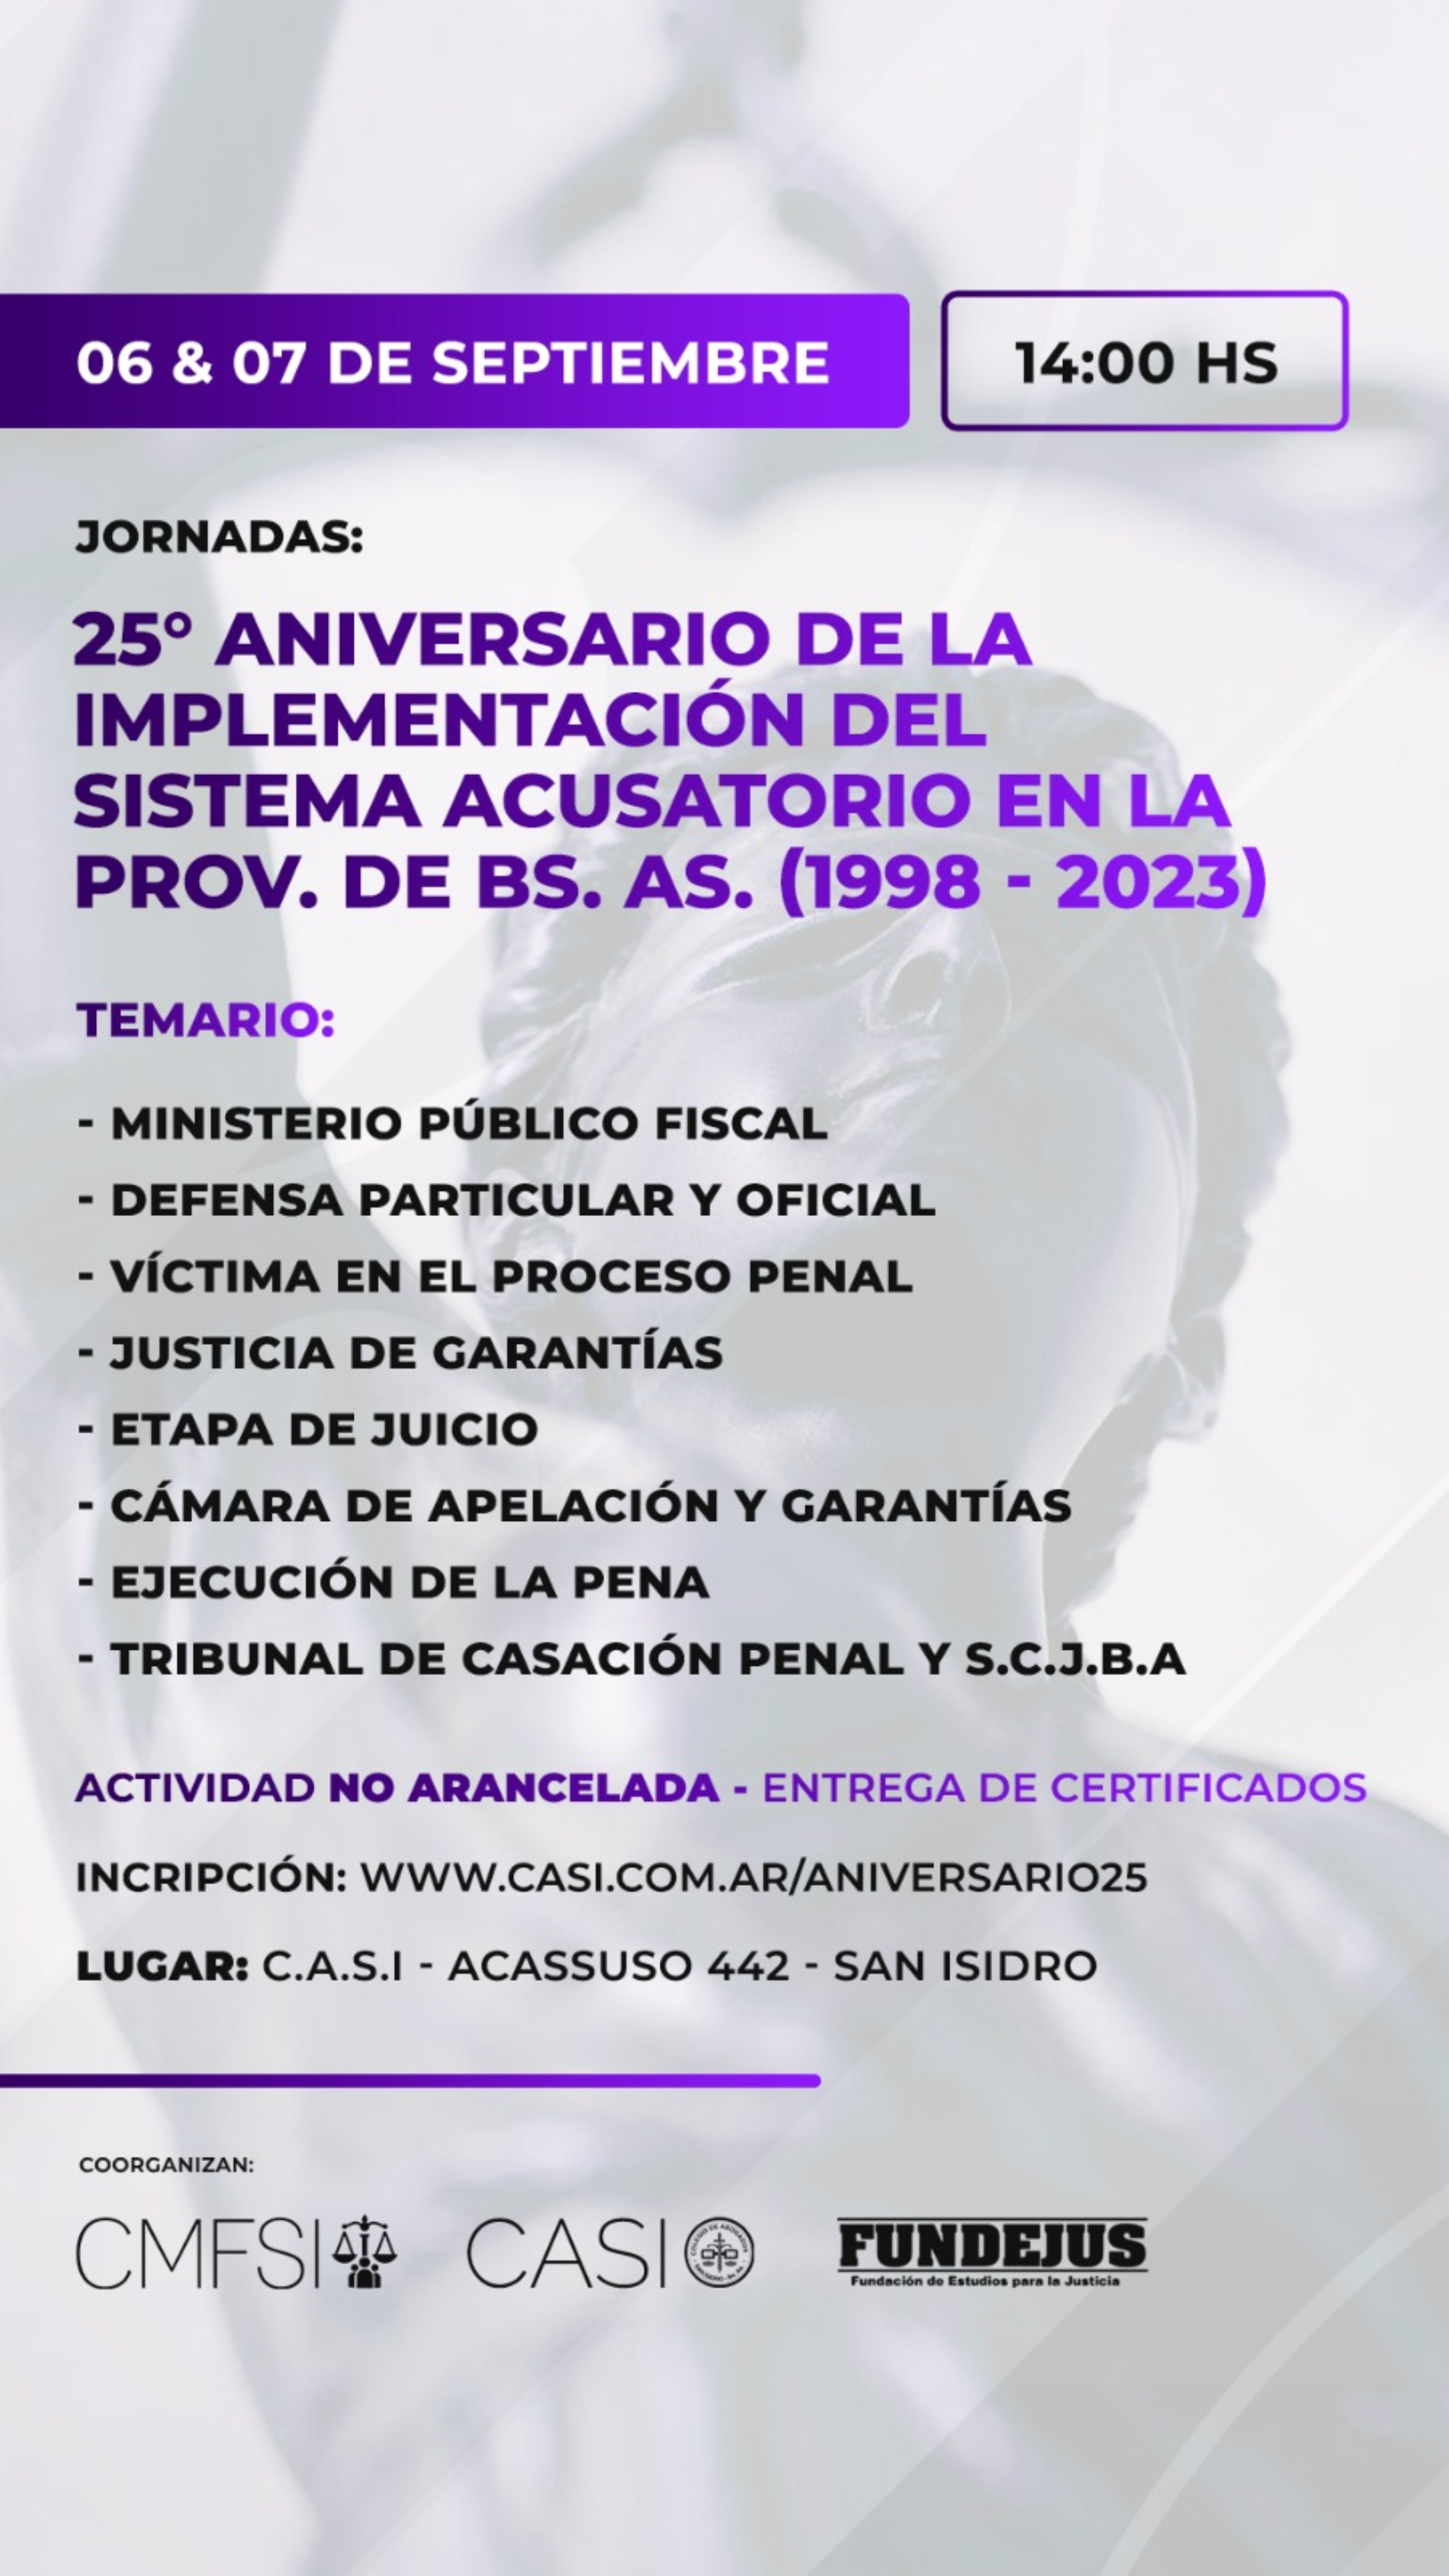 FUNDEJUS invita: Jornadas «25º Aniversario de la implementación del sistema acusatorio en la provincia de Buenos Aires». (1998-2023)